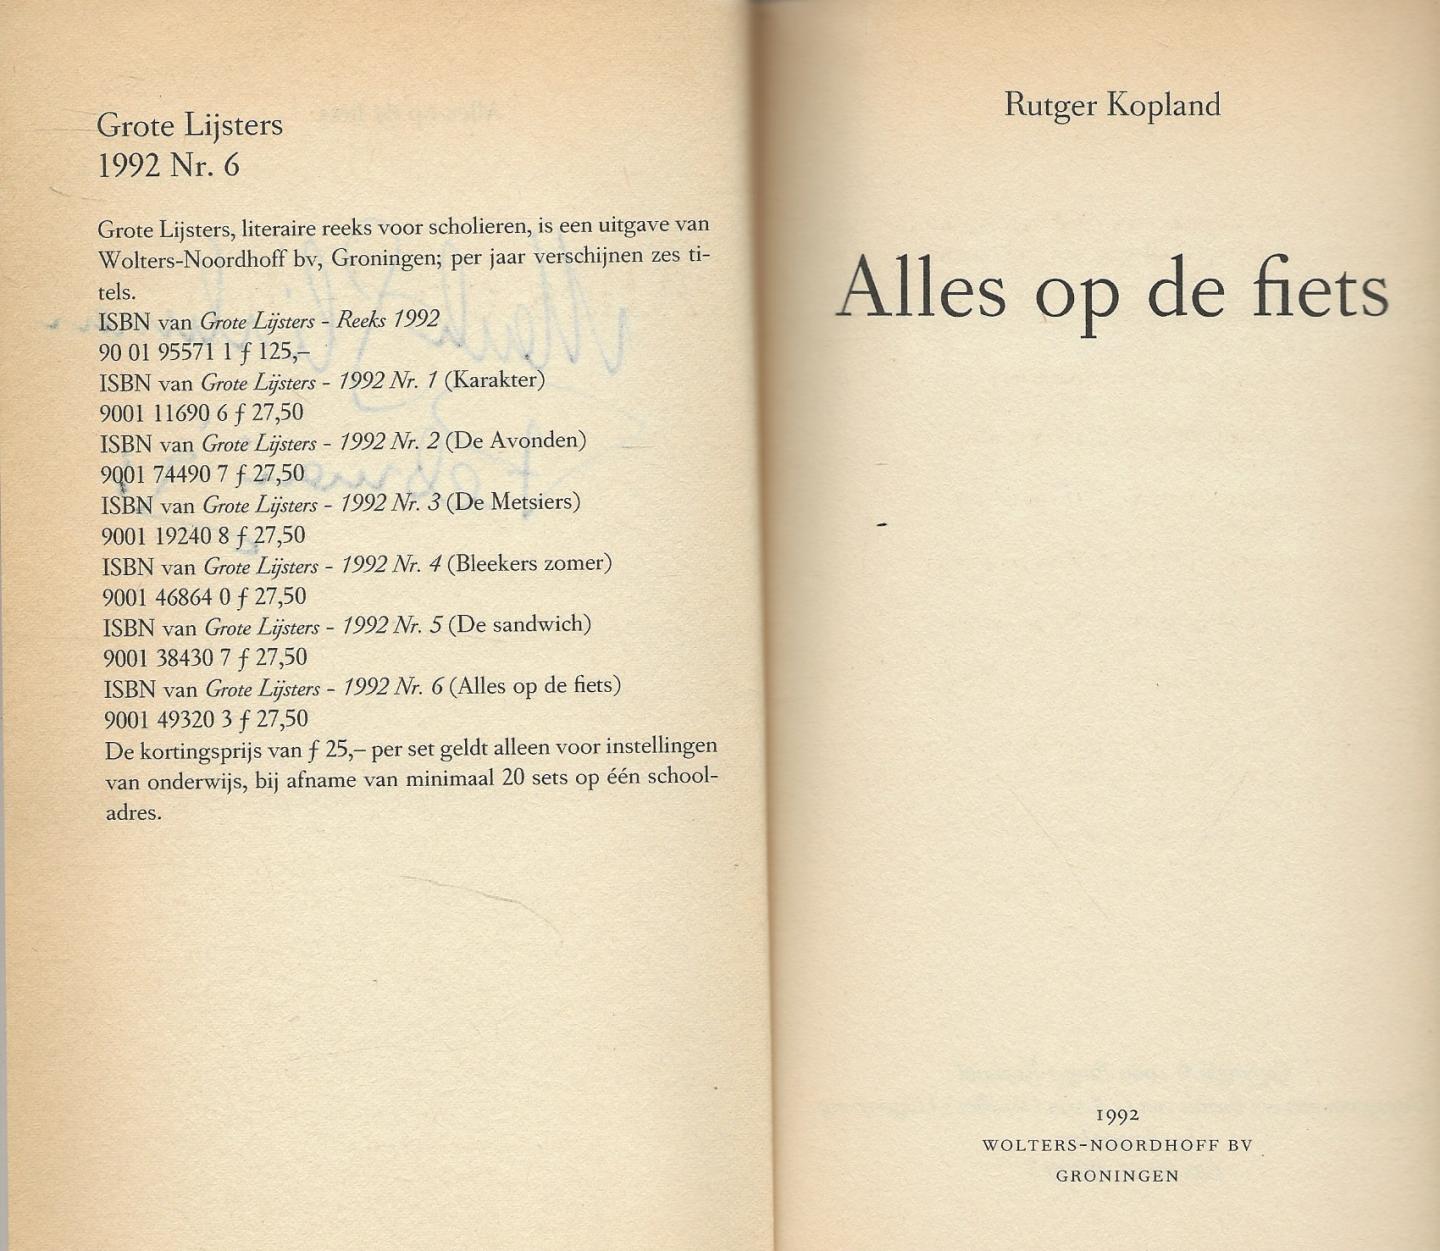 Kopland Rutger  ...  ontwerp omslag Hans Bocking [UNO] Amsterdam...Fotografie omslag Lex van Pieterson Den Haag - Alles op de fiets  .......  de grote lijsters uit 1992 no: 6........Wil het ooit weer iets worden